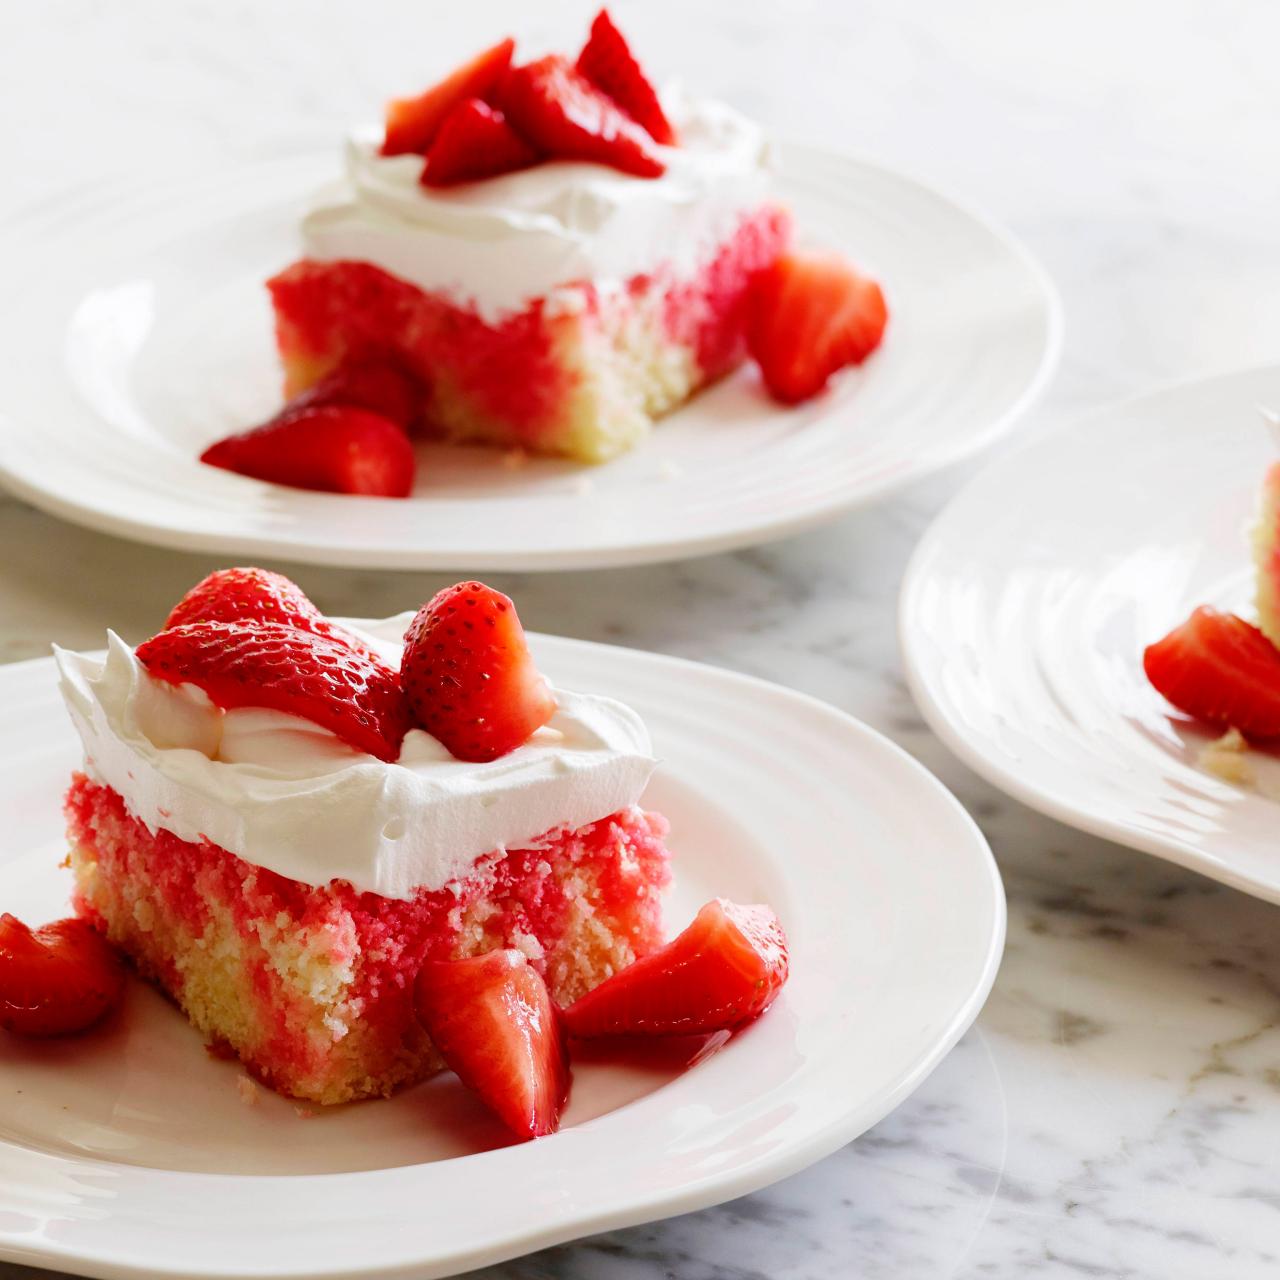 Lemon Strawberry Cake Recipe - SugarSpicesLife